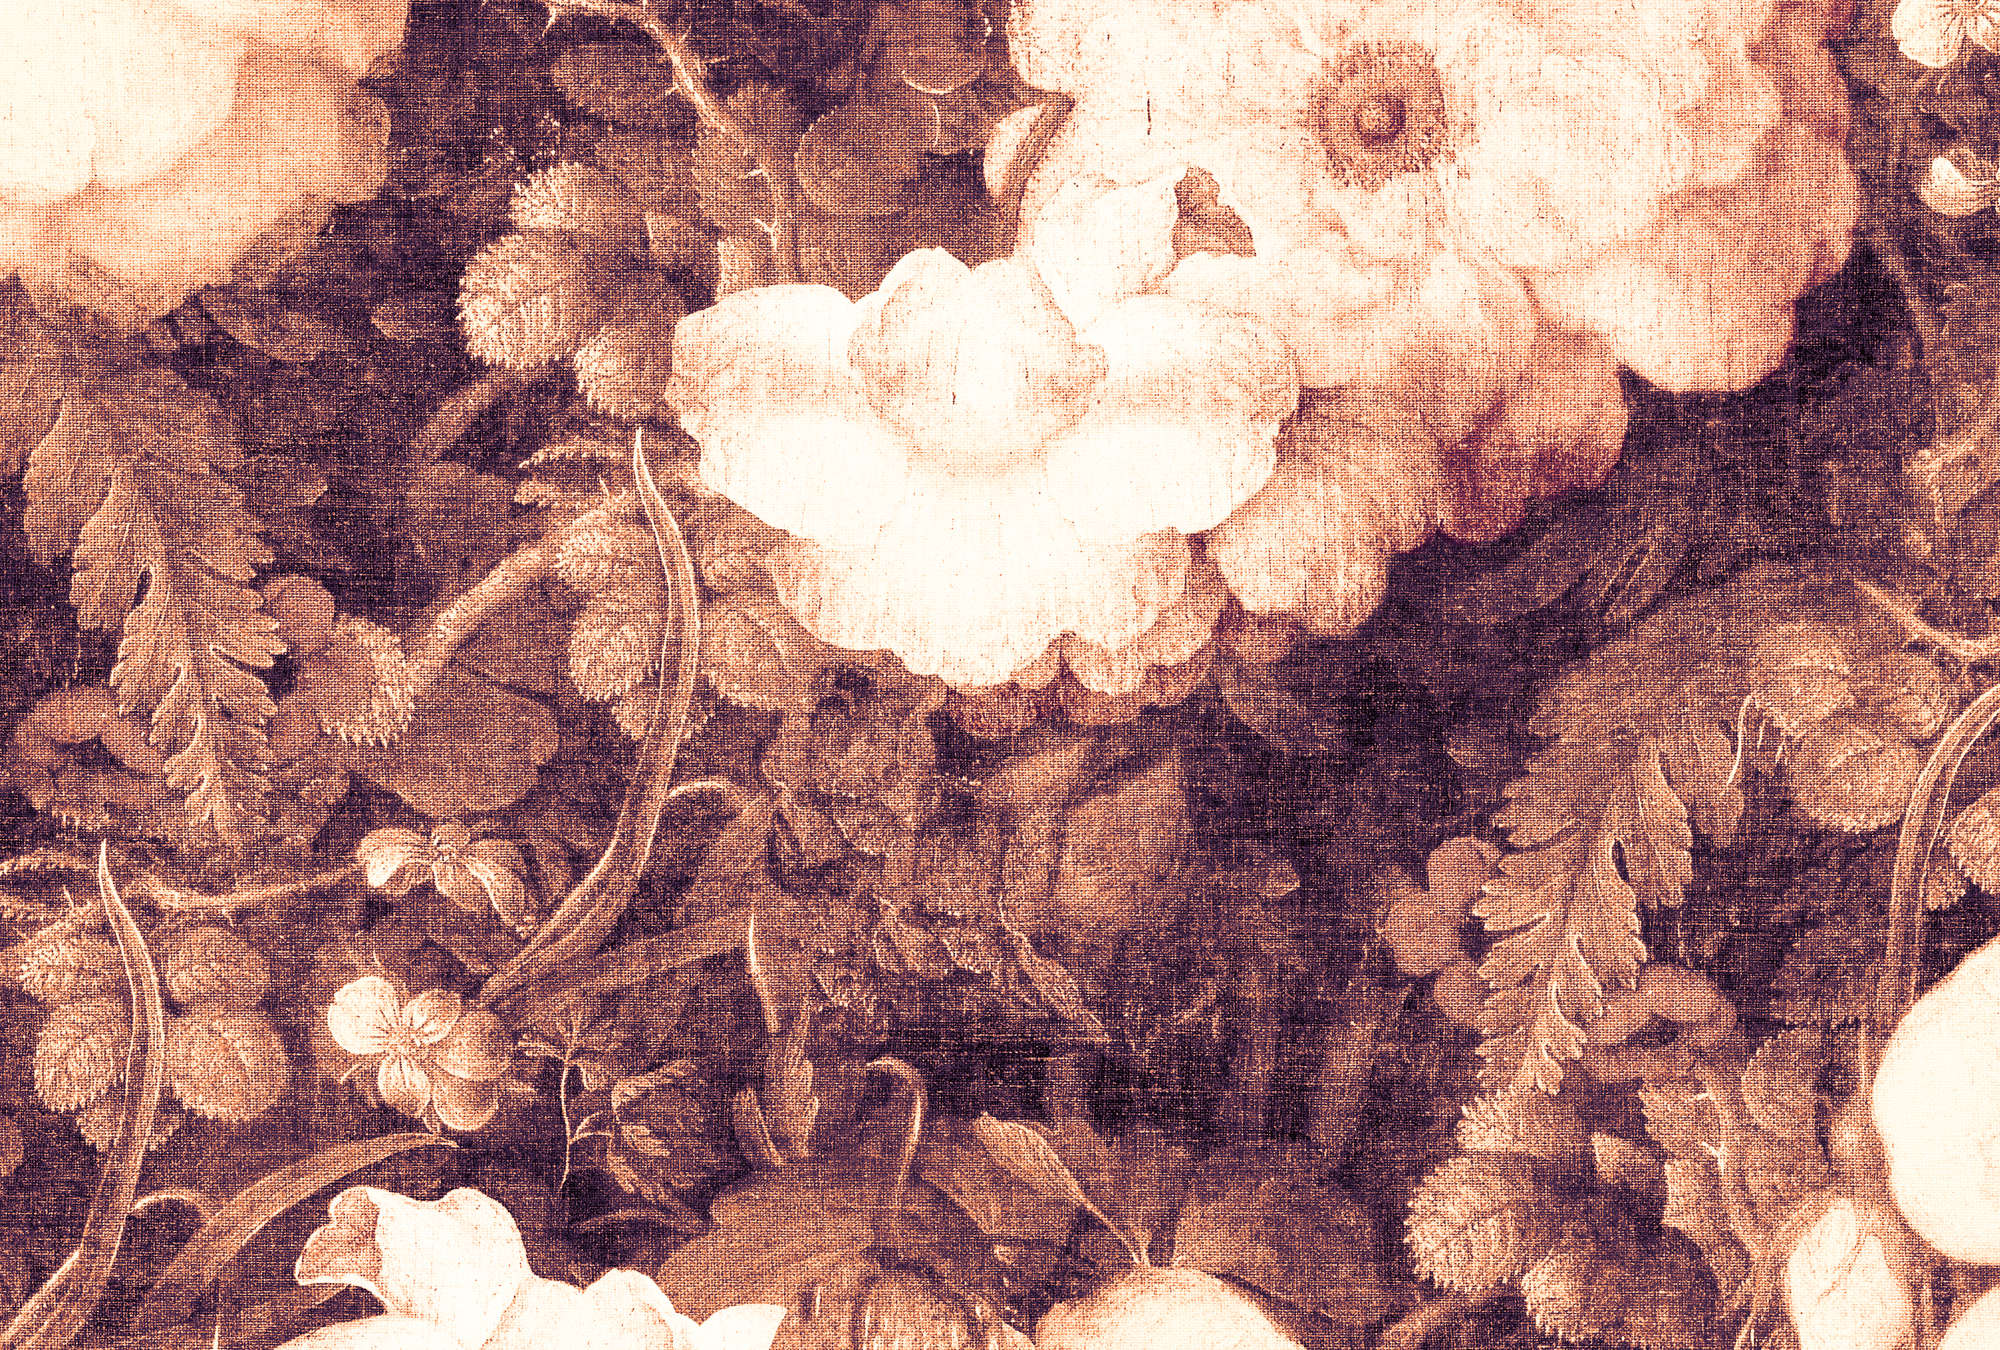             Muurschildering bloemen historische stijl in sepia look - Oranje, Wit
        